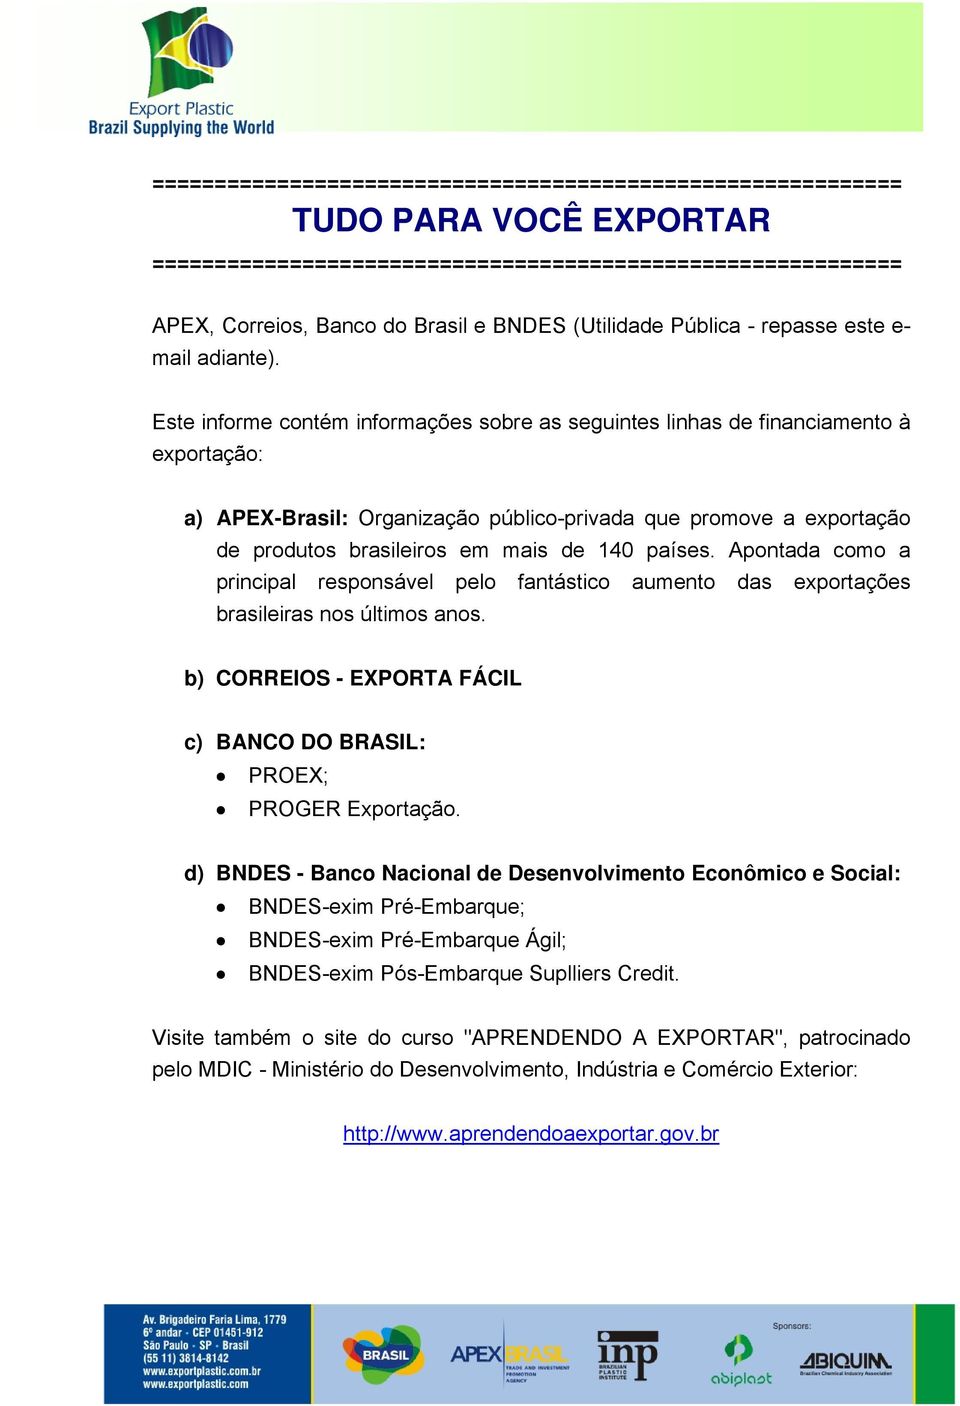 Este informe contém informações sobre as seguintes linhas de financiamento à exportação: a) APEX-Brasil: Organização público-privada que promove a exportação de produtos brasileiros em mais de 140